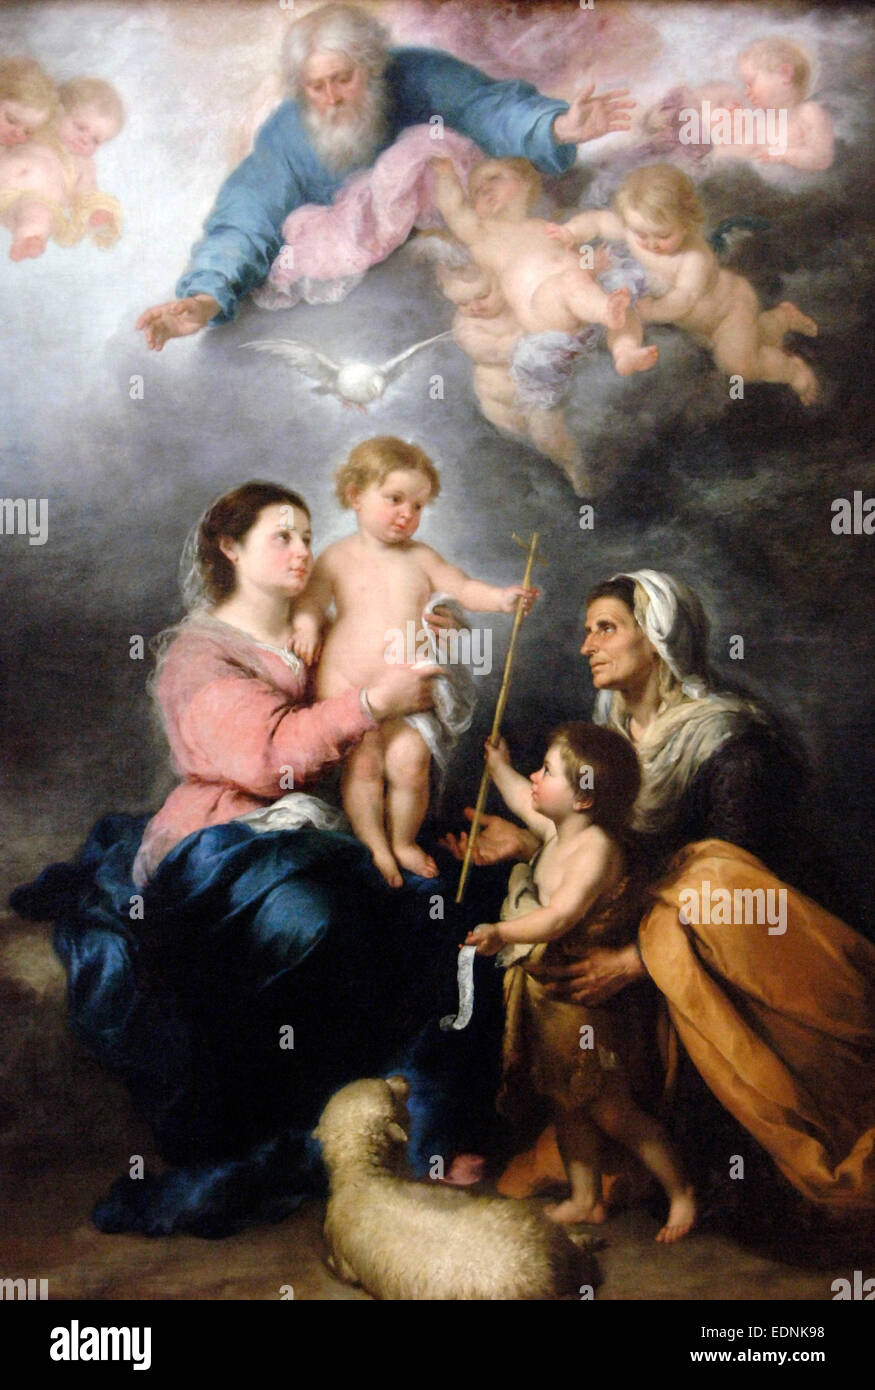 Bartolomé Esteban Murillo (1618-1682). Peintre baroque espagnol. La Sainte Famille ou vierge de Séville. 1682. Musée du Louvre. Paris. La France. Banque D'Images